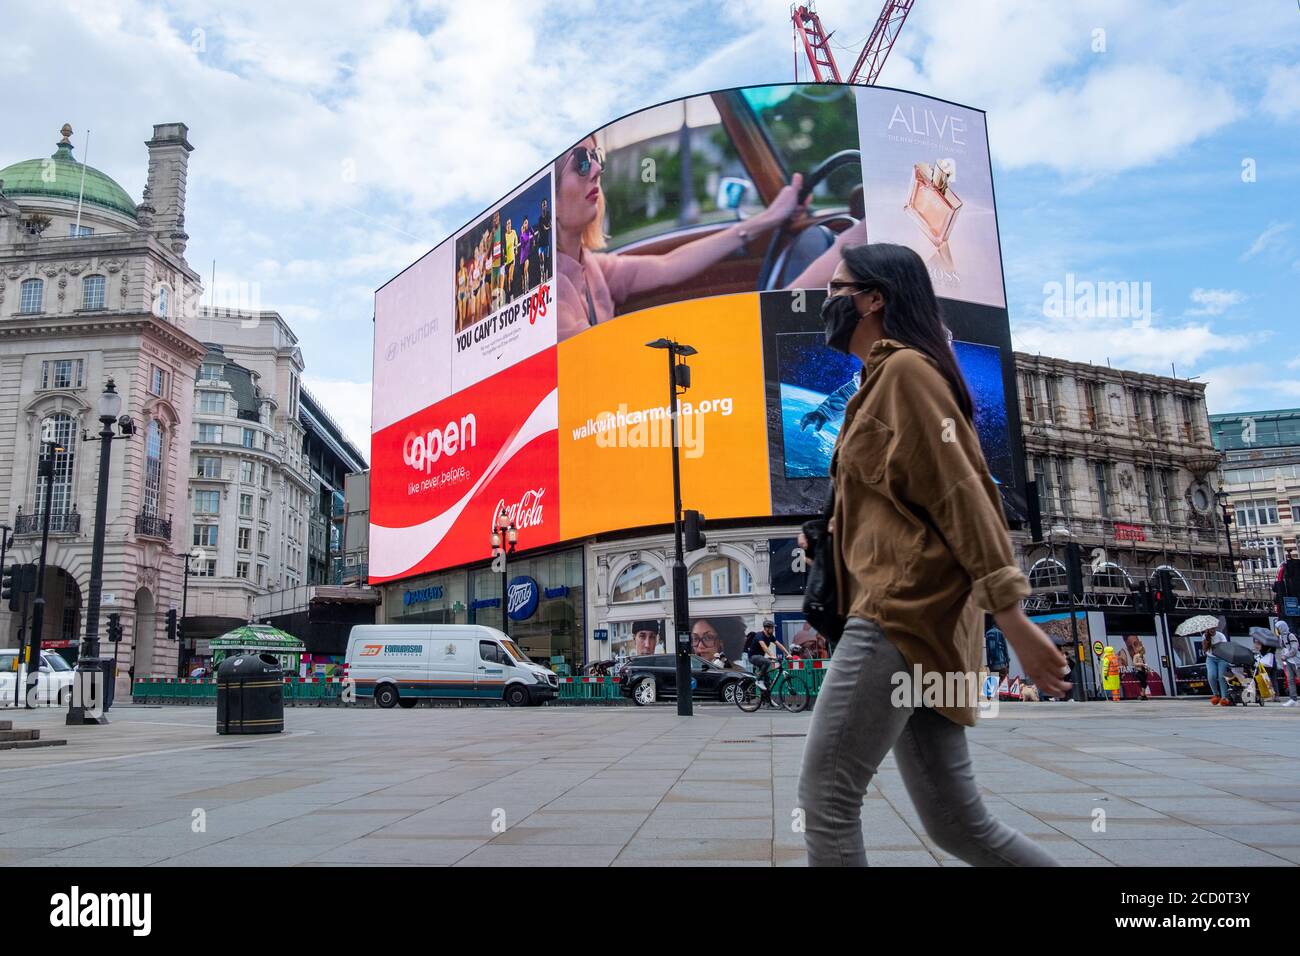 Londra - Agosto, 2020: Tranquilla scena di strada di Londra su Piccadilly Circus, quasi vuoto a causa degli effetti del coronavirus Foto Stock